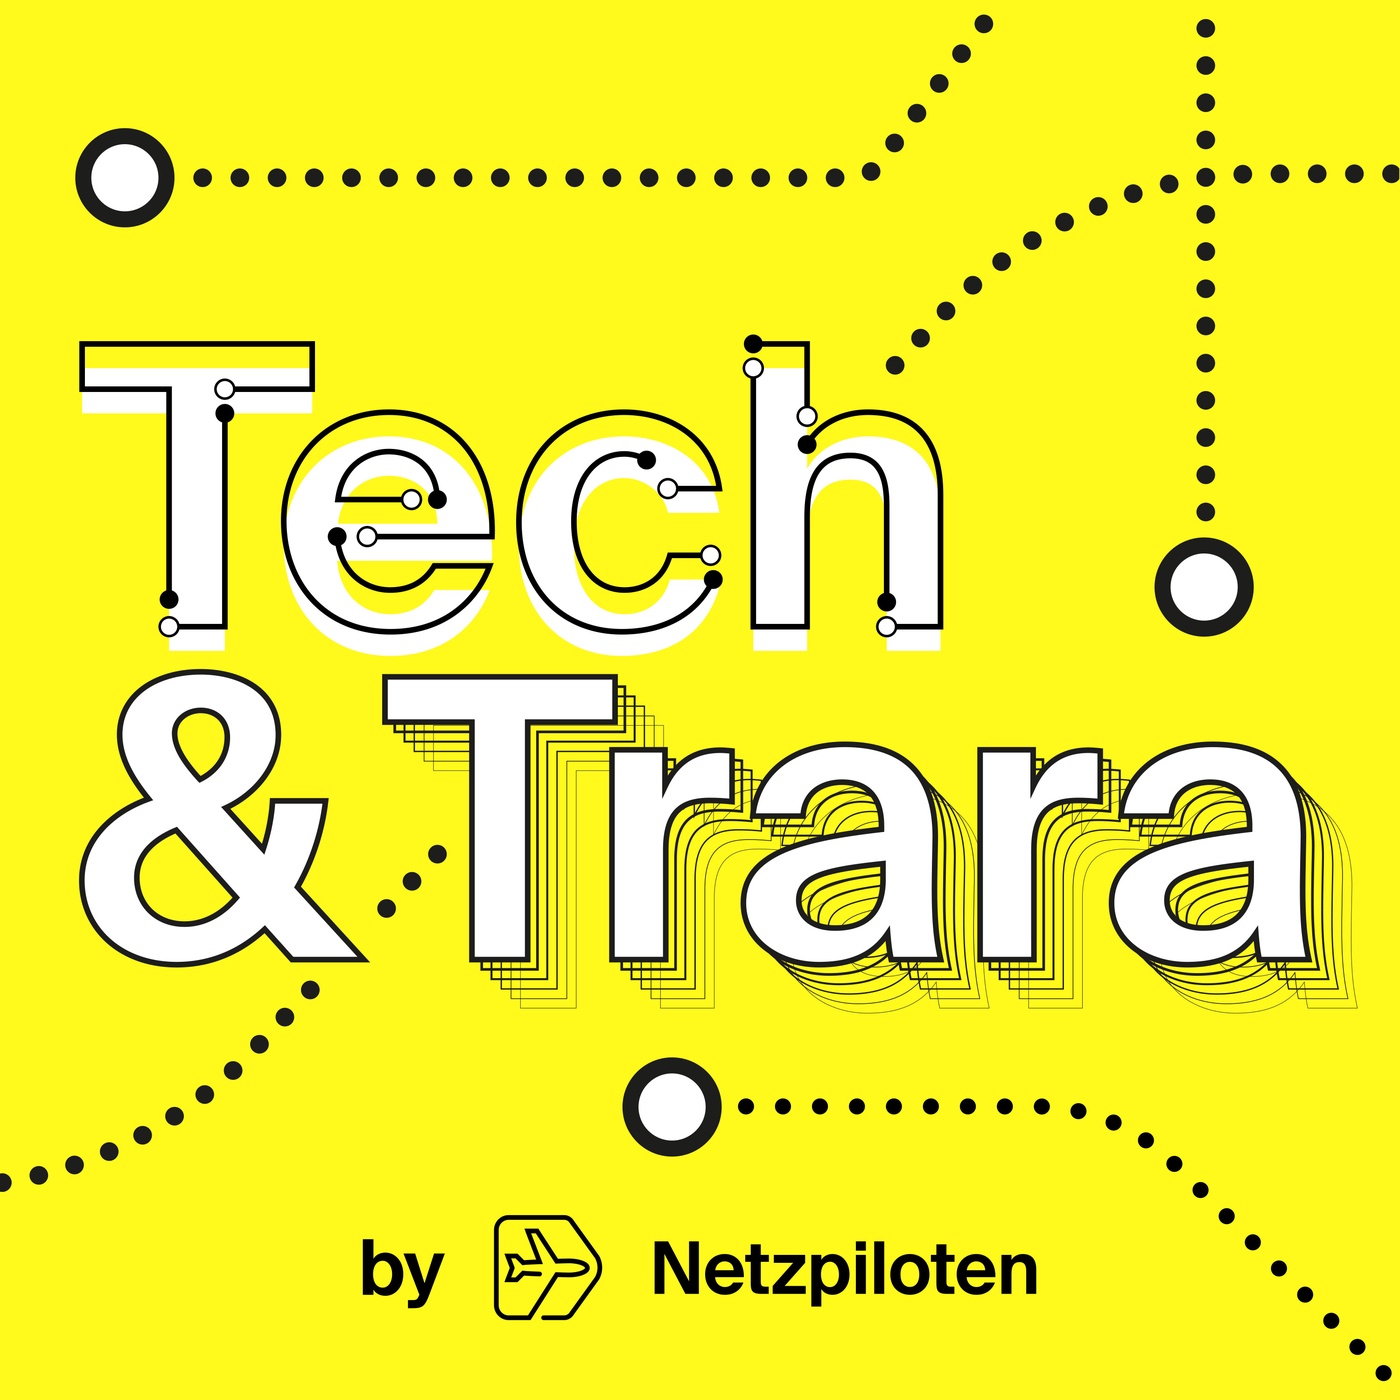 Tech und Trara